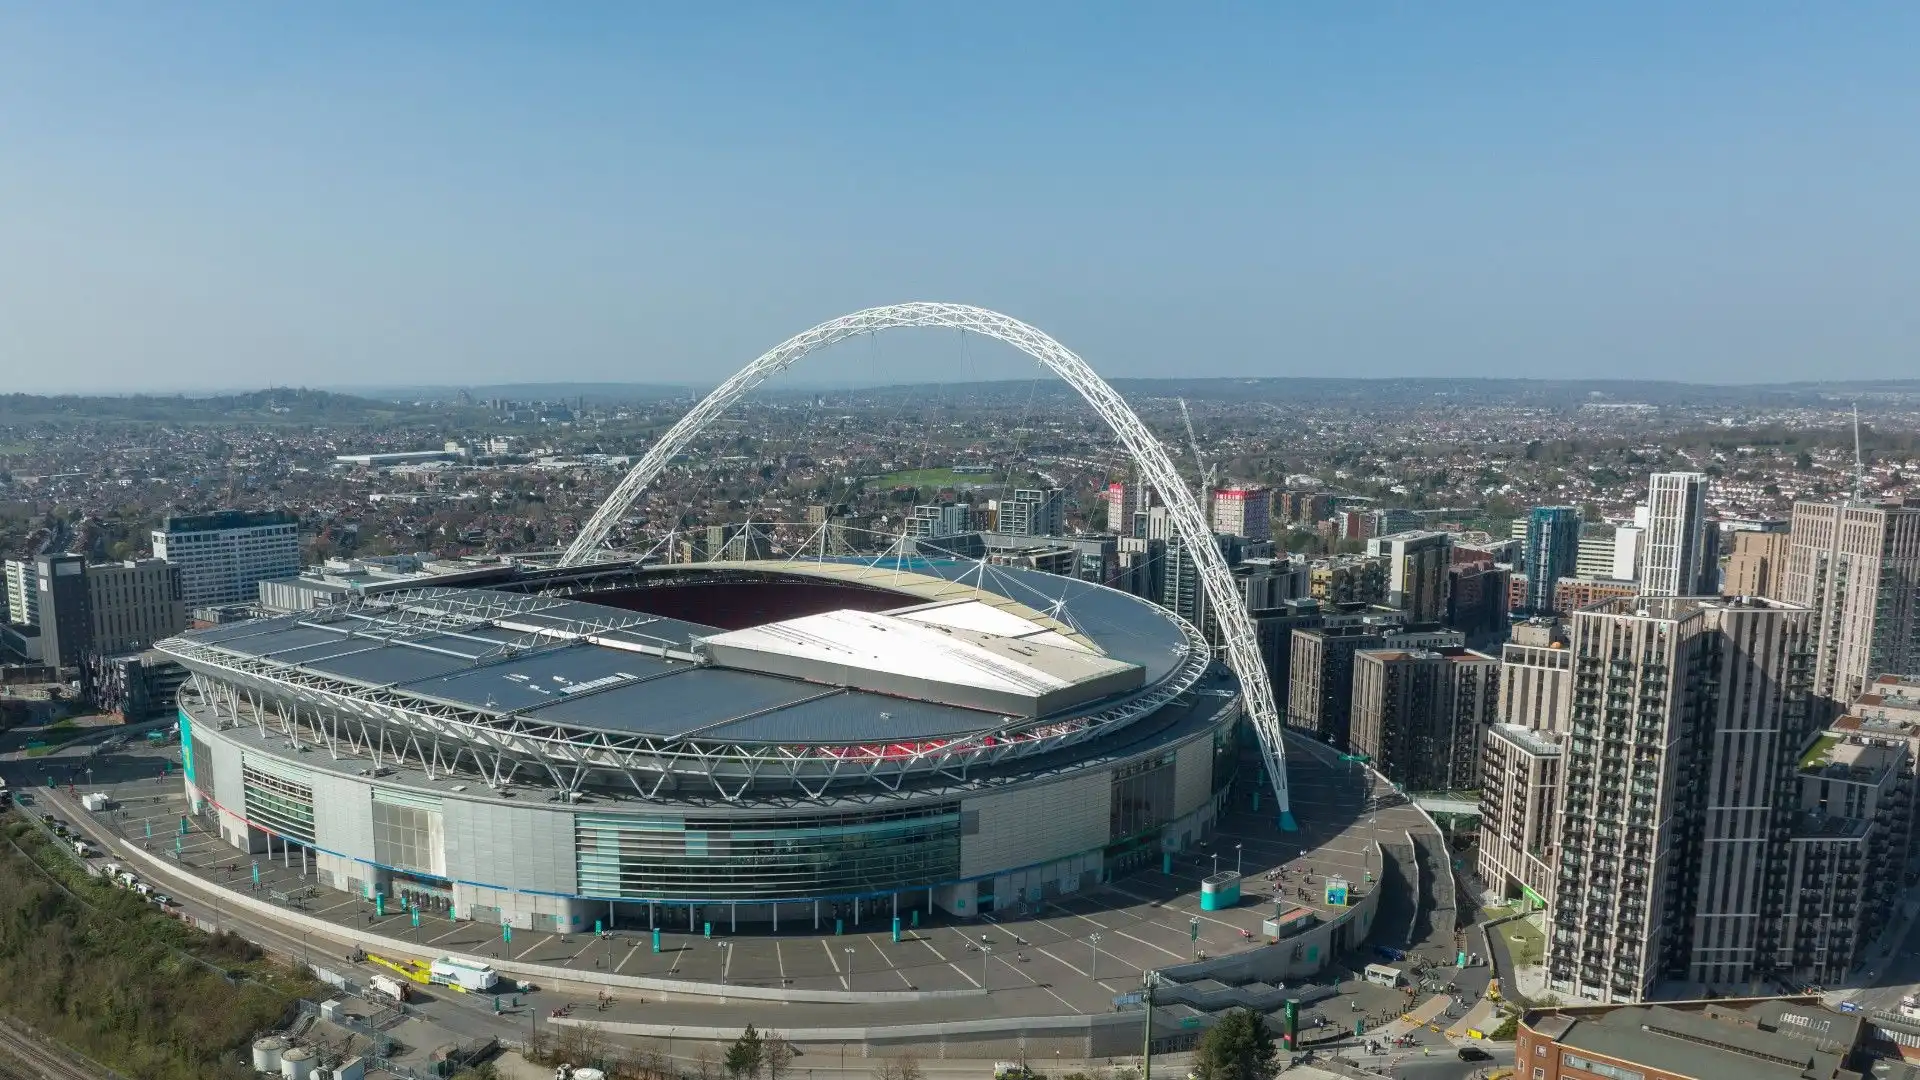 Wembley Stadium - Londra, Inghilterra: lo stadio più famoso d'Inghilterra. Ha ospitato tantissime finali delle competizioni calcistiche più importanti